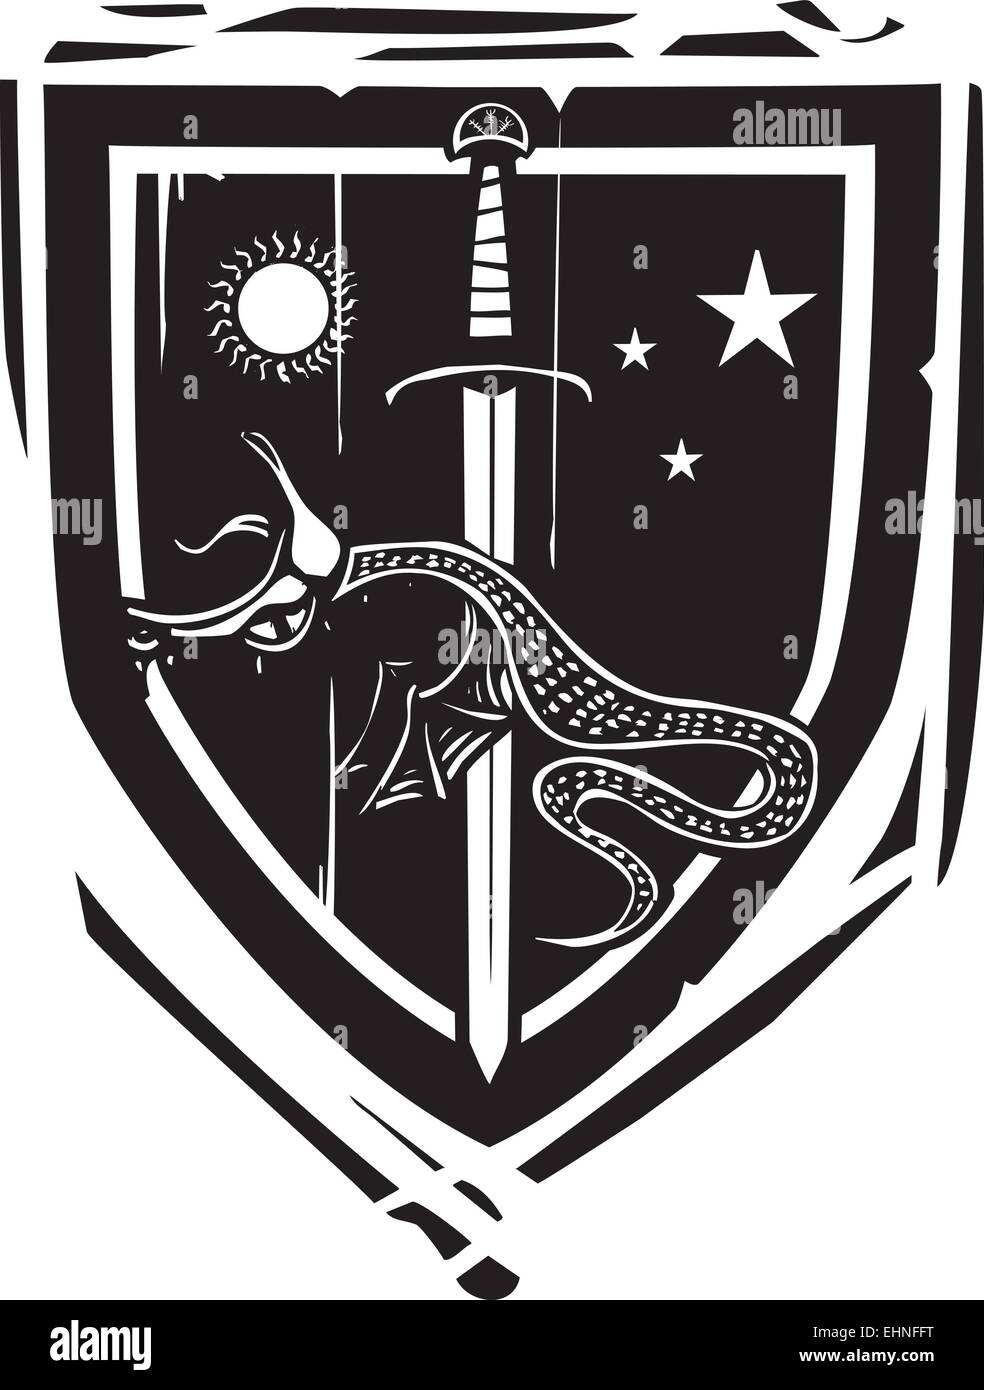 Bouclier héraldique style gravure sur bois avec un dragon empalé sur une épée Illustration de Vecteur